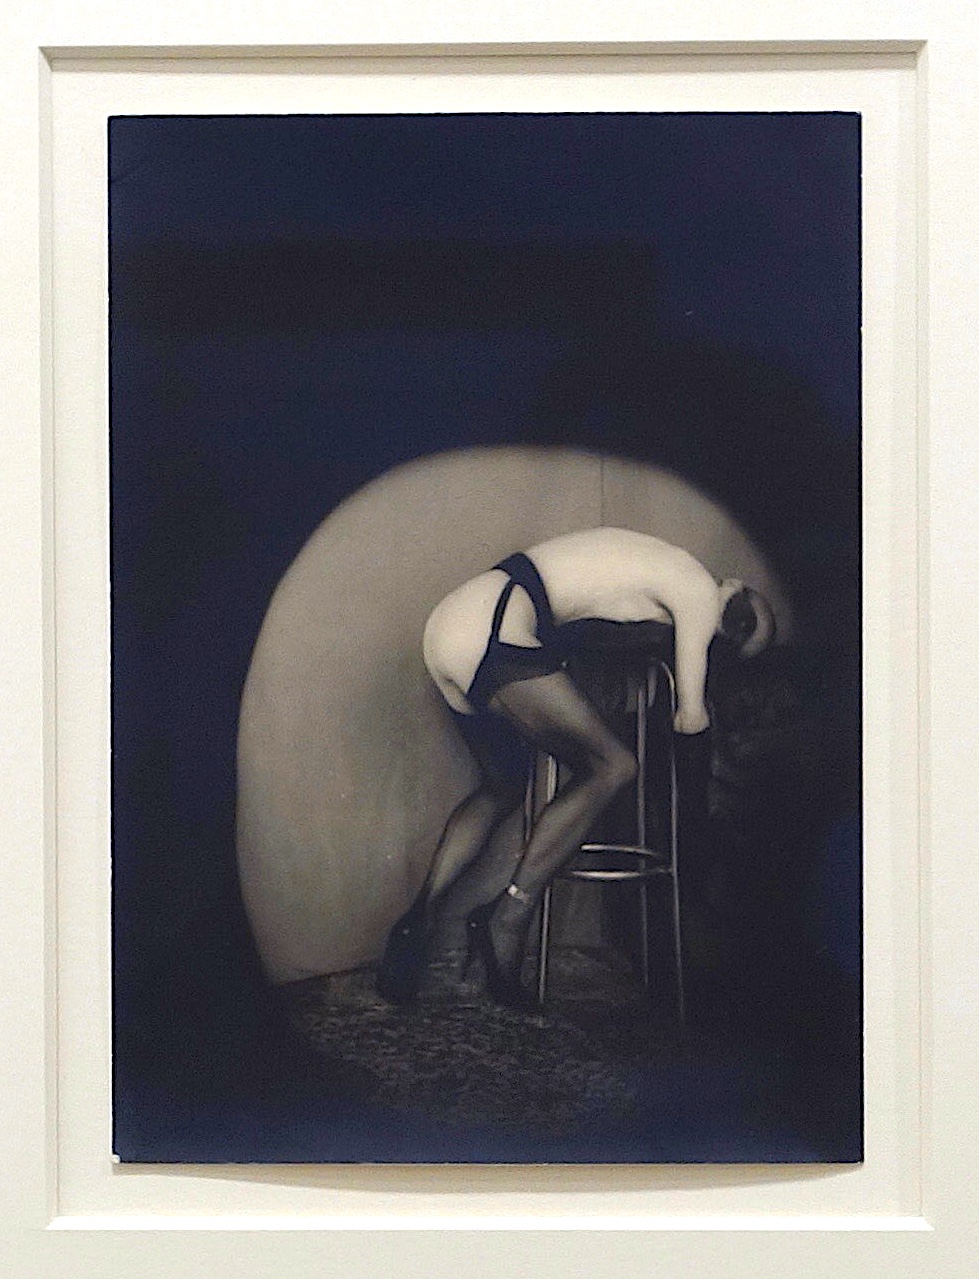 Pierre Molinier Mandrake se régale – version préparatoire 1967 Tirage argentique d’époque, 17.6 x 12.6 cm, 4.500 Euro @ Galerie 1900-2000